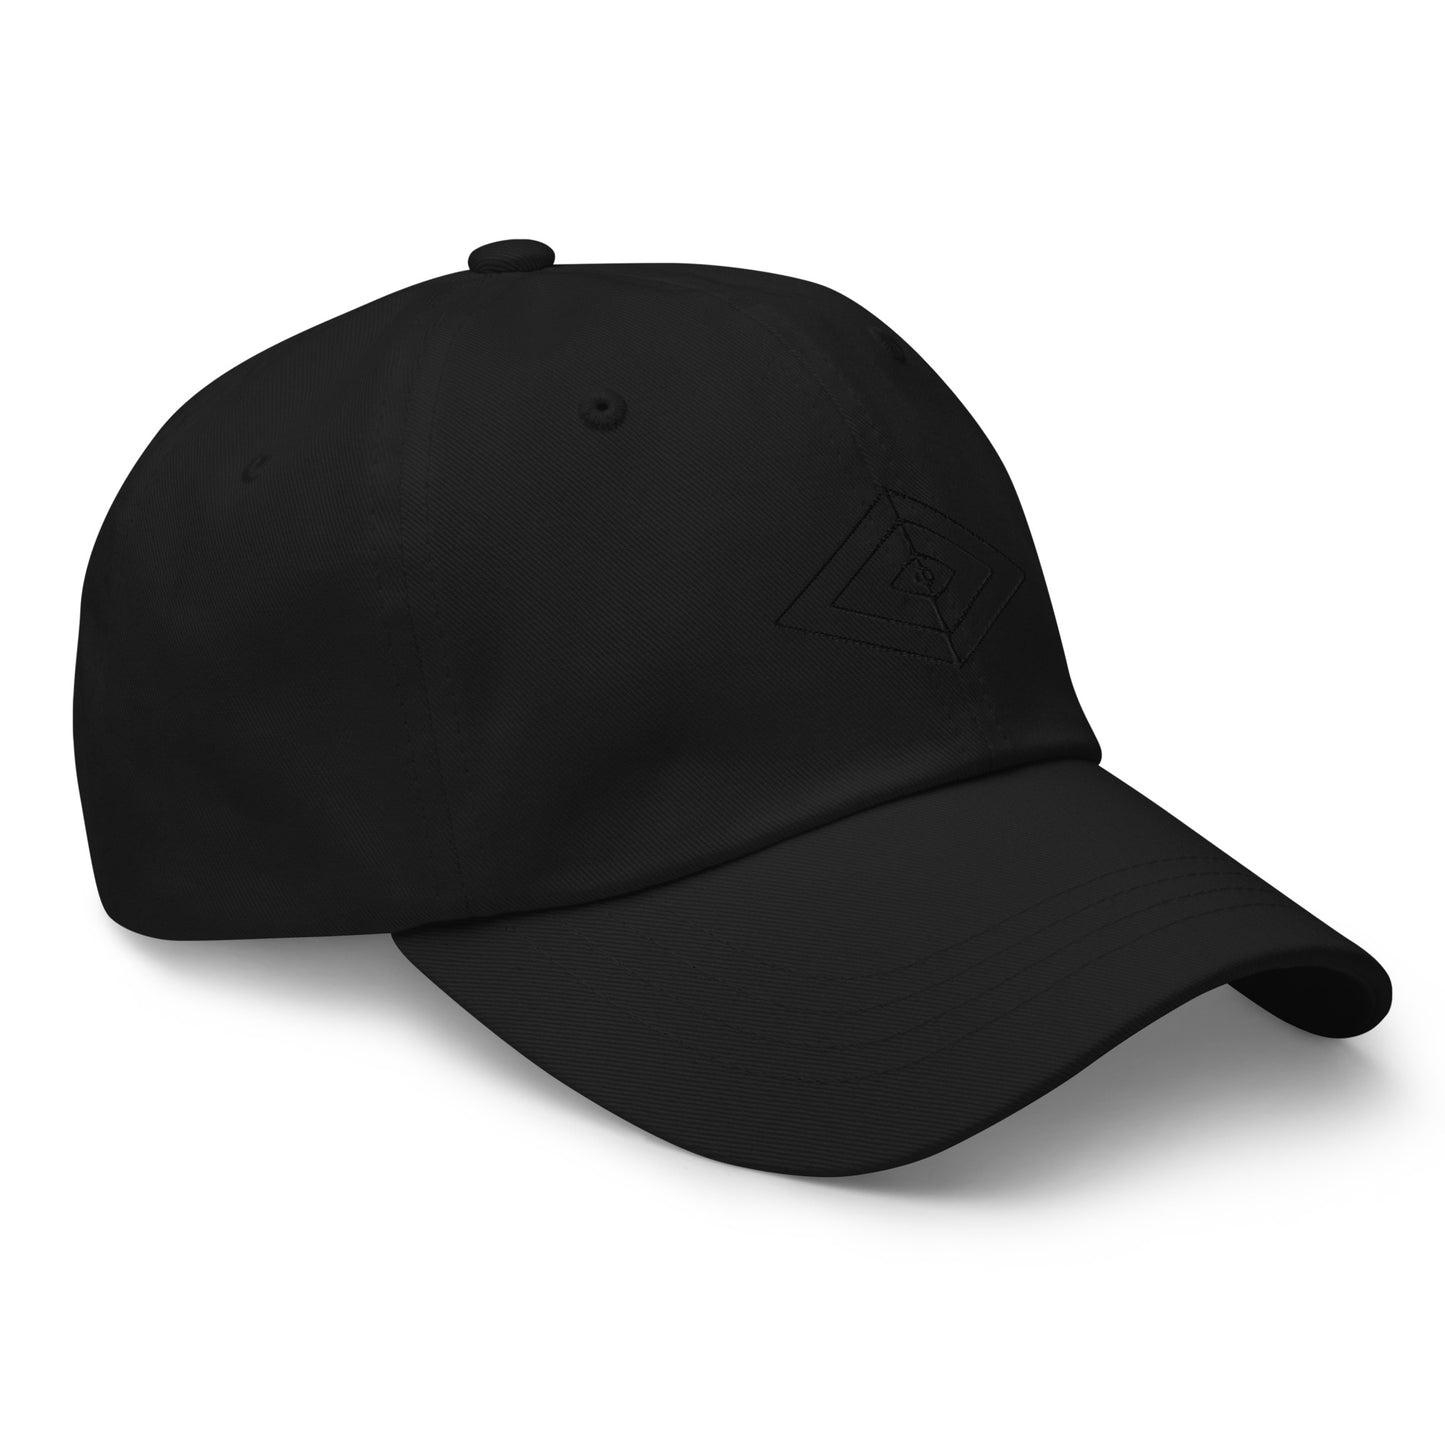 NOIR BALL CAP